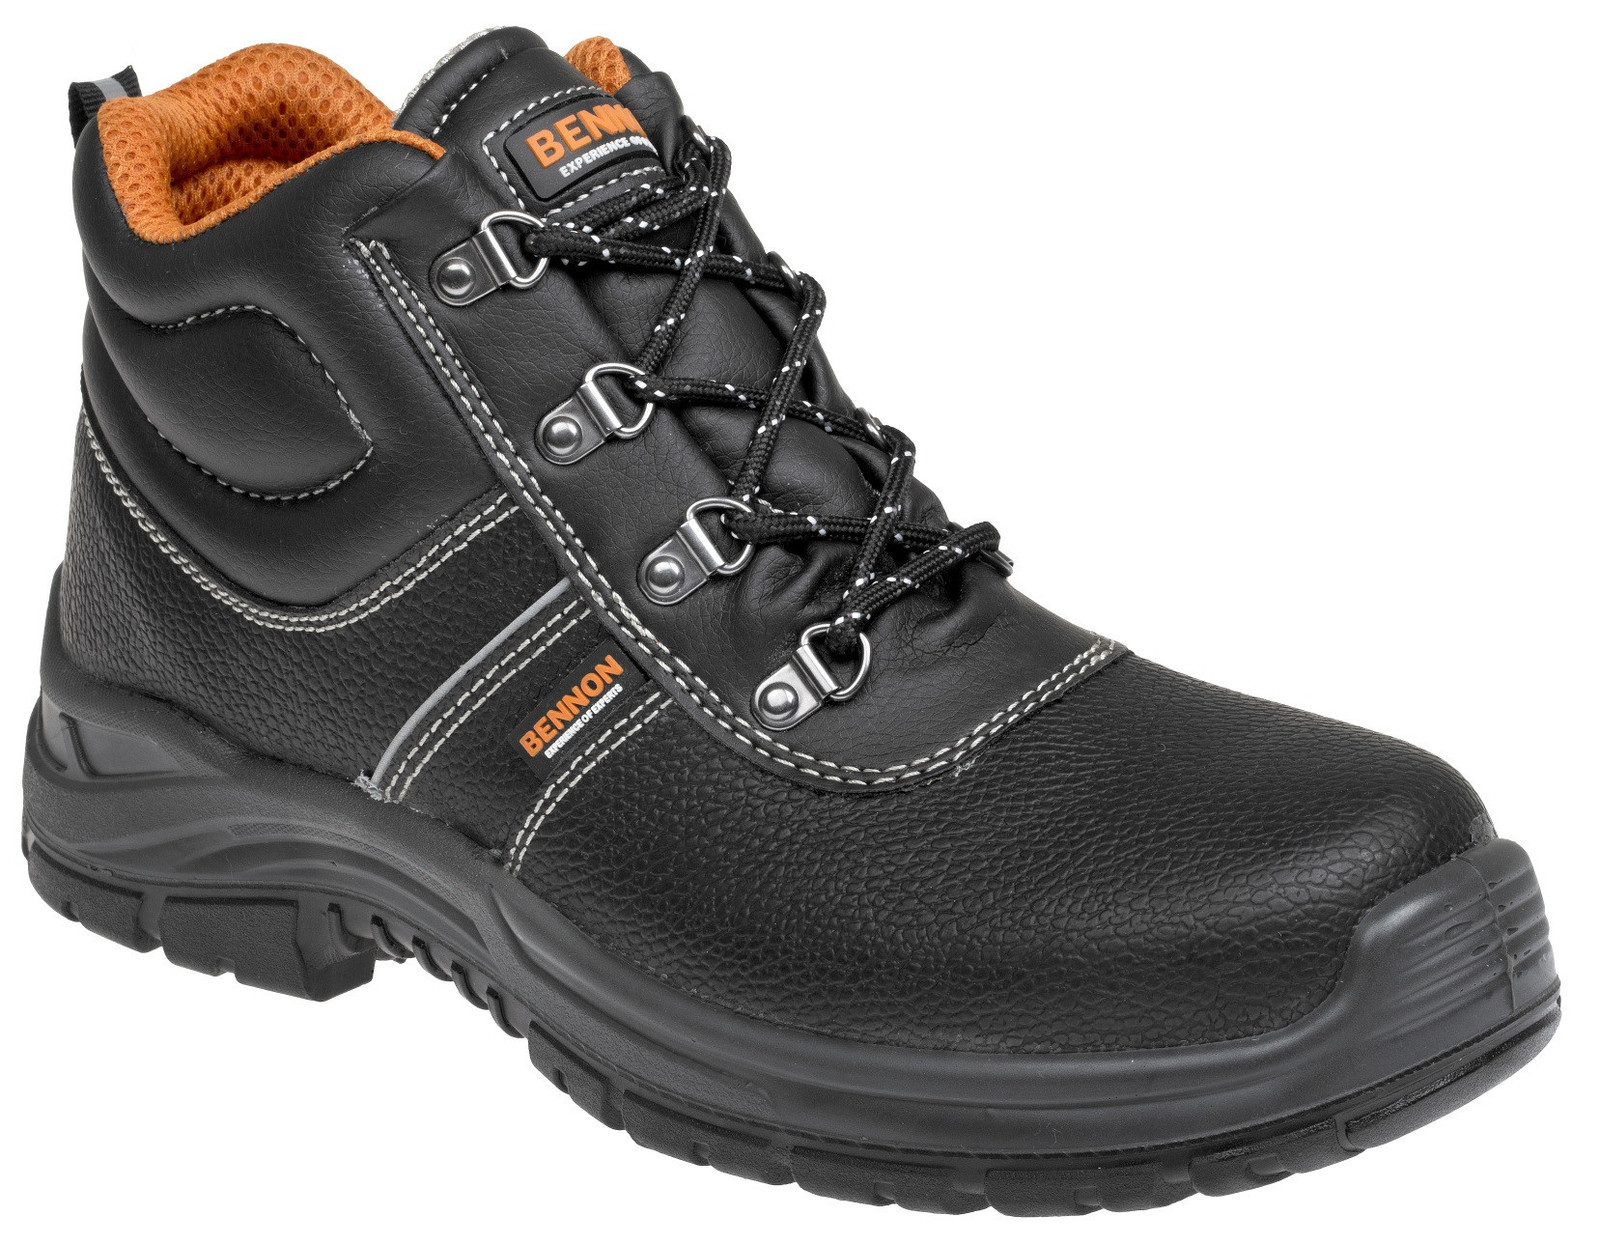 Bezpečnostná obuv Bennon Basic S3 - veľkosť: 36, farba: čierna